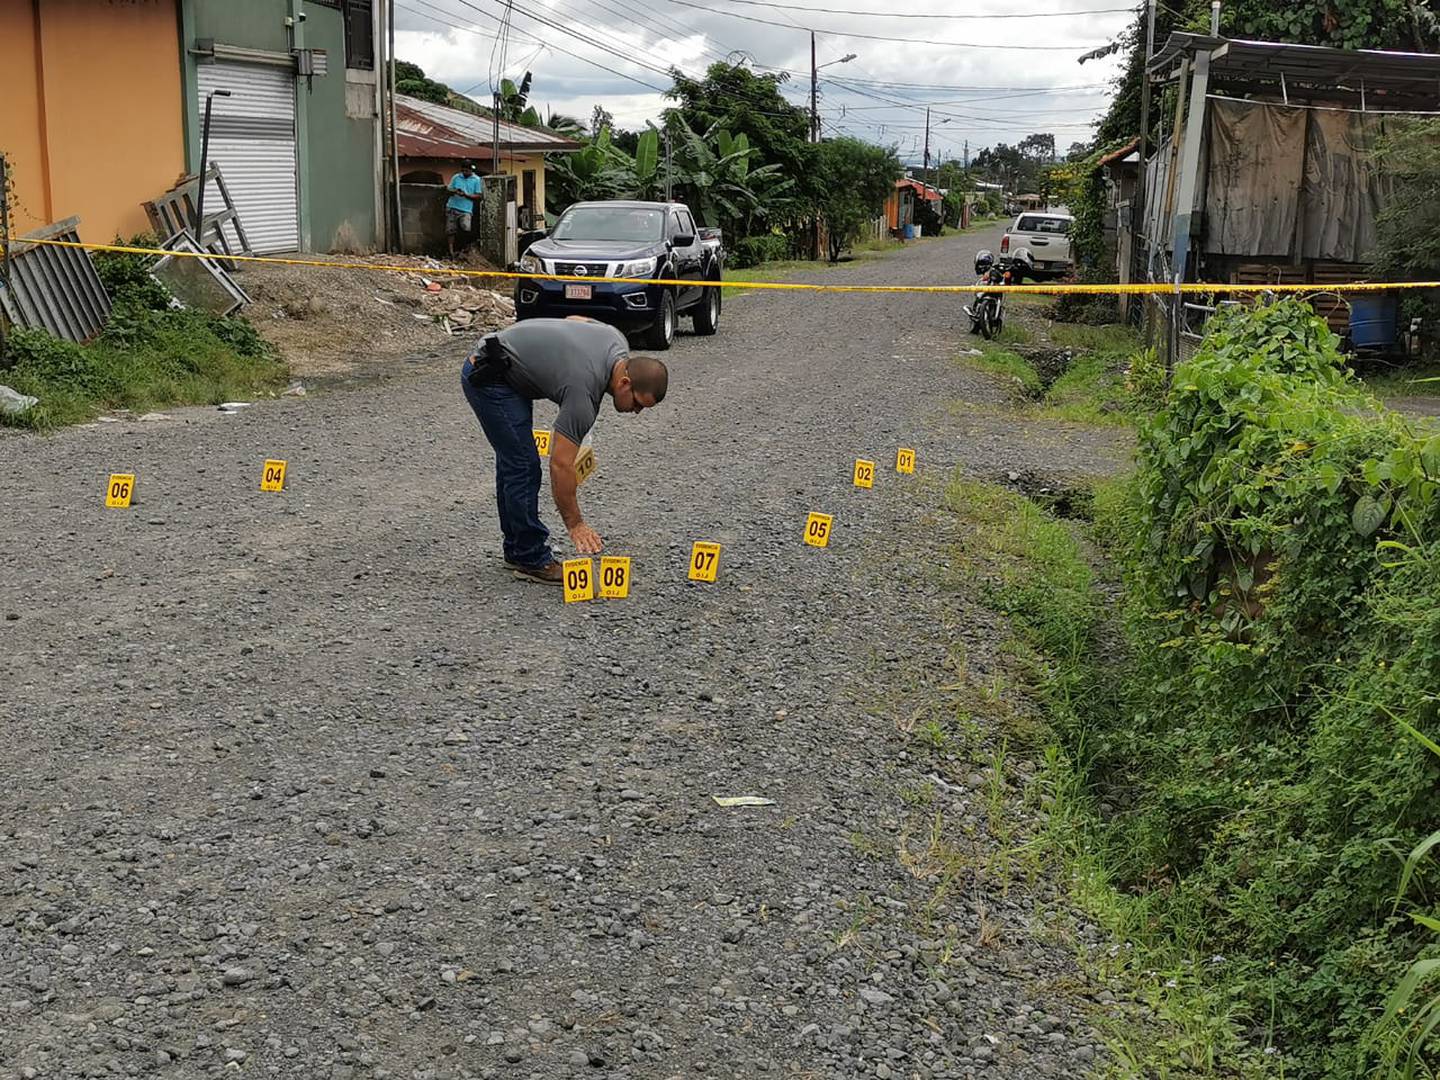 Poco antes de las 3 p. m. los agentes del OIJ llegaron al sitio de la balacera y entre las piedras de una calle de lastre encontraron más de 16 indicios balísticos. Foto: Reiner Montero.